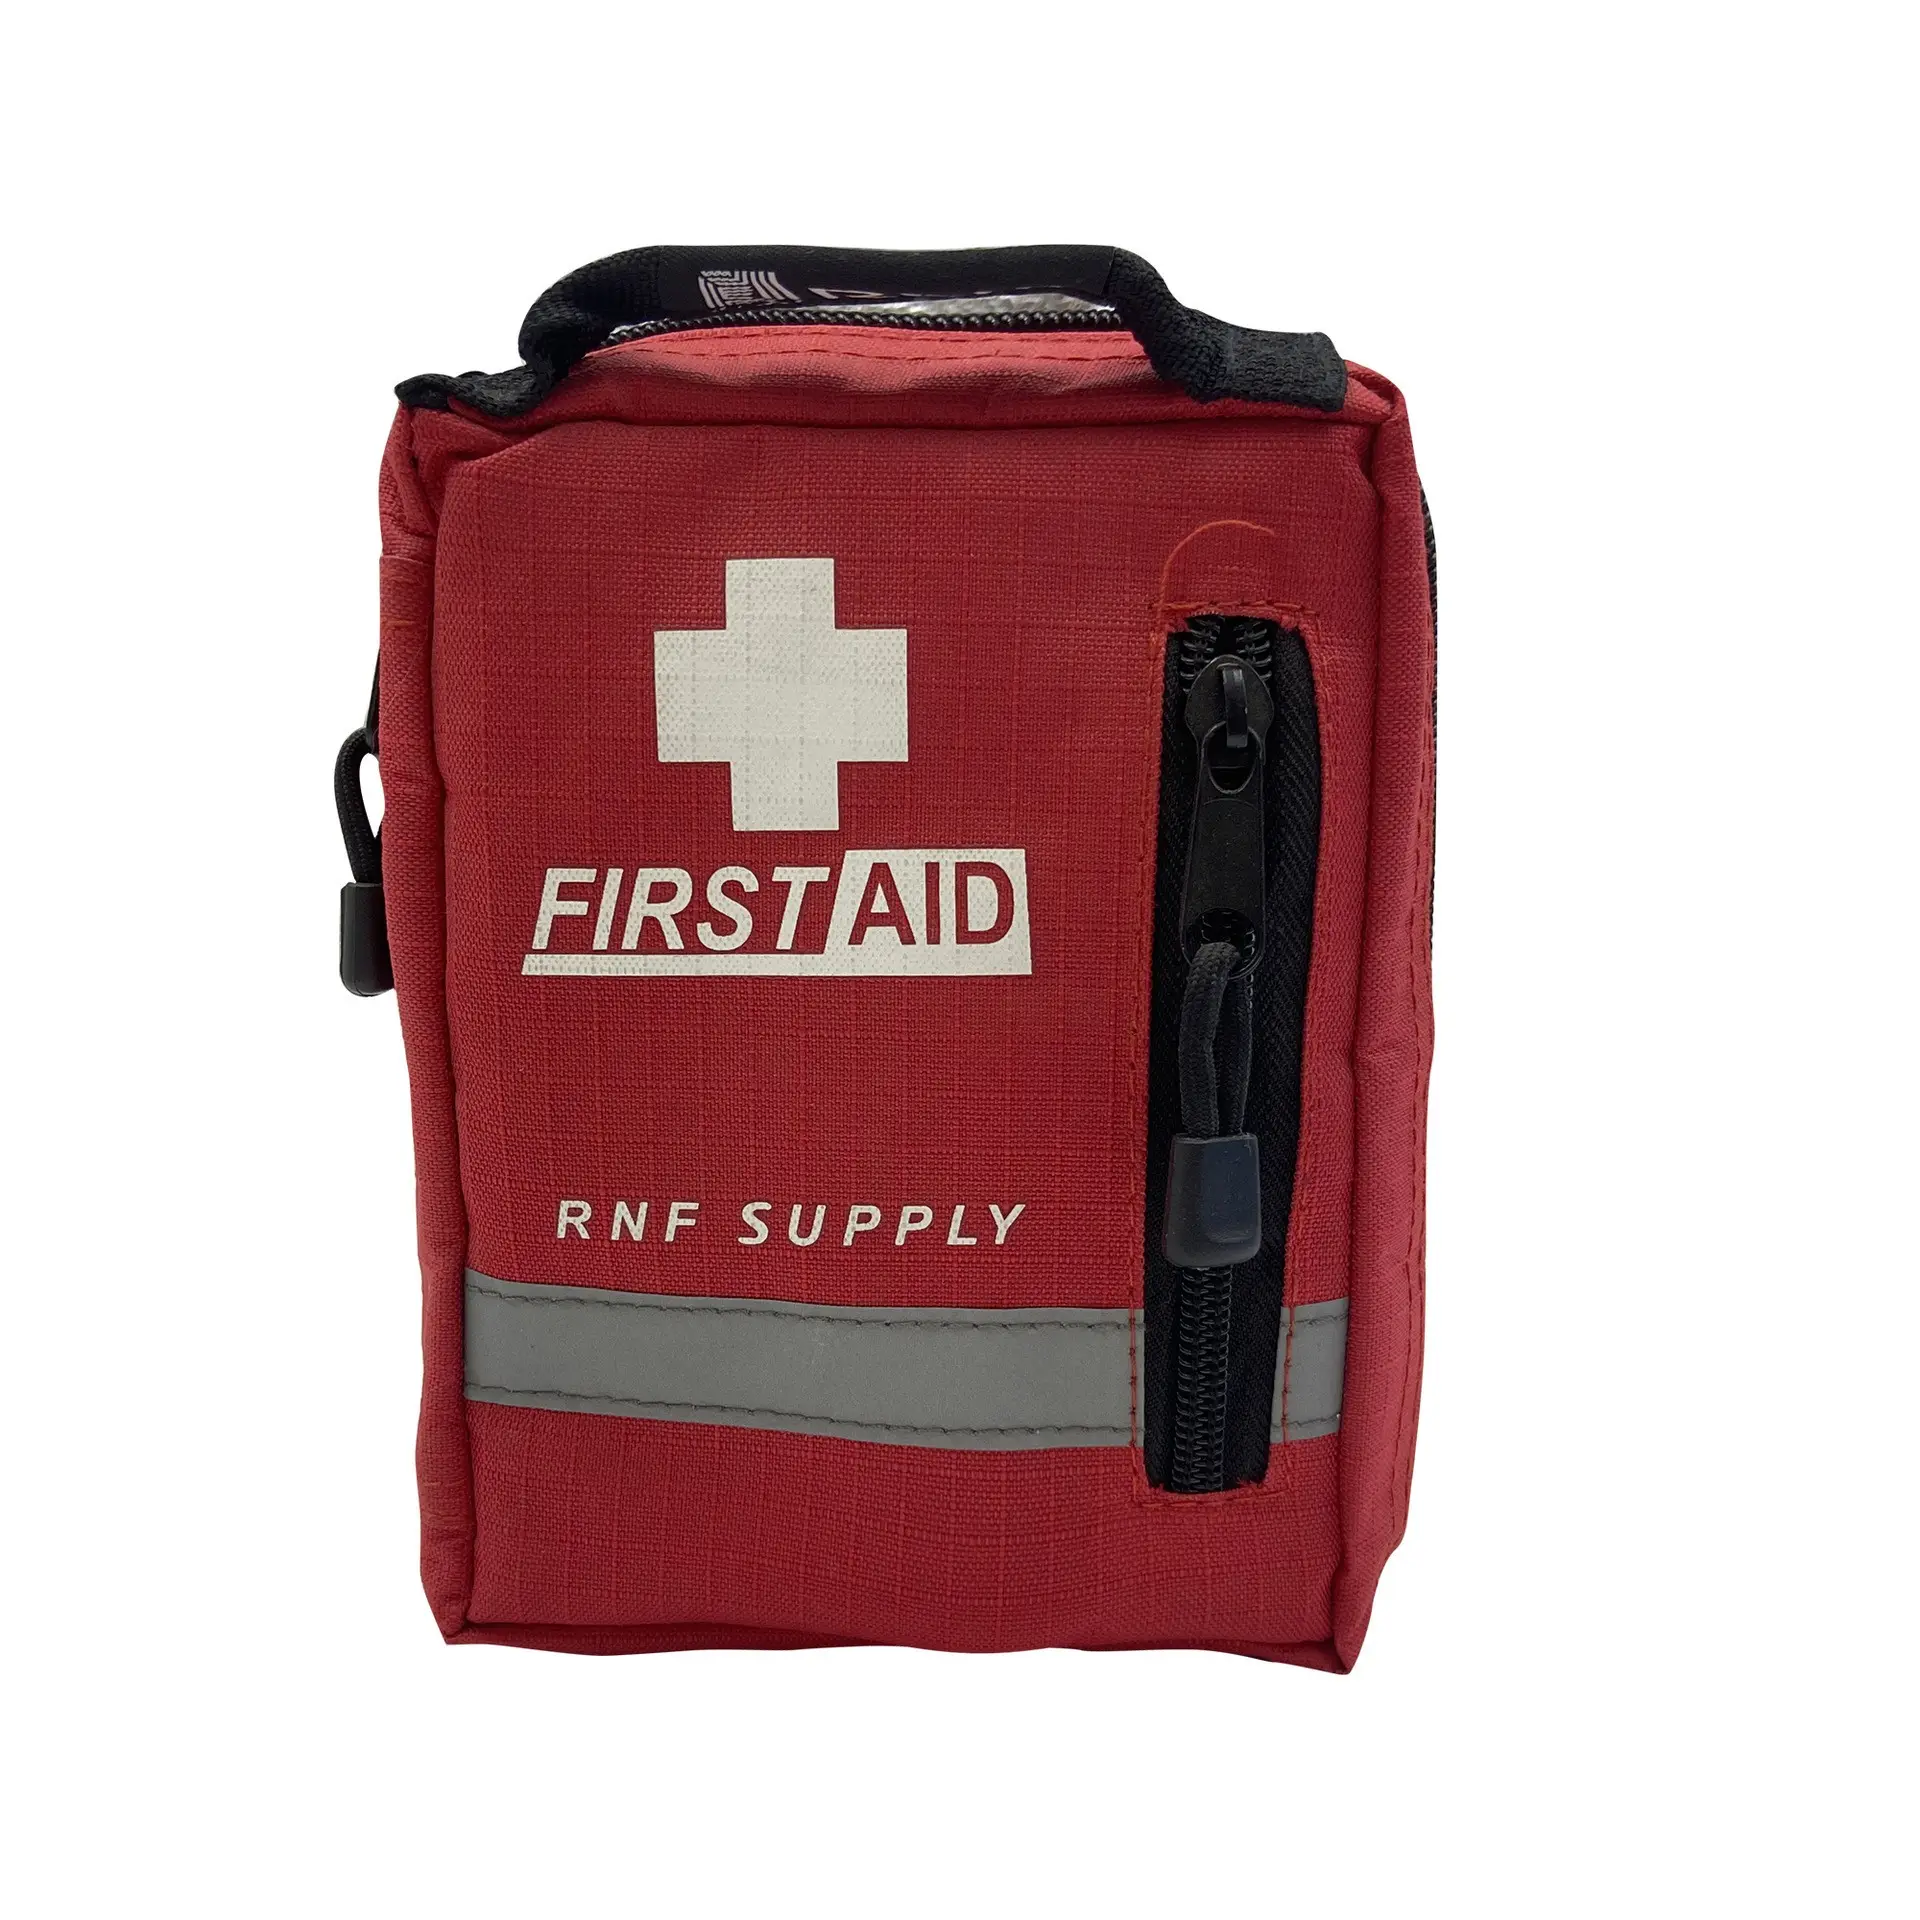 Firstime OEM y tế Kit và hộ gia đình xe khẩn cấp phiêu lưu cắm trại du lịch Survival Viện trợ đầu tiên Kit cho SOS